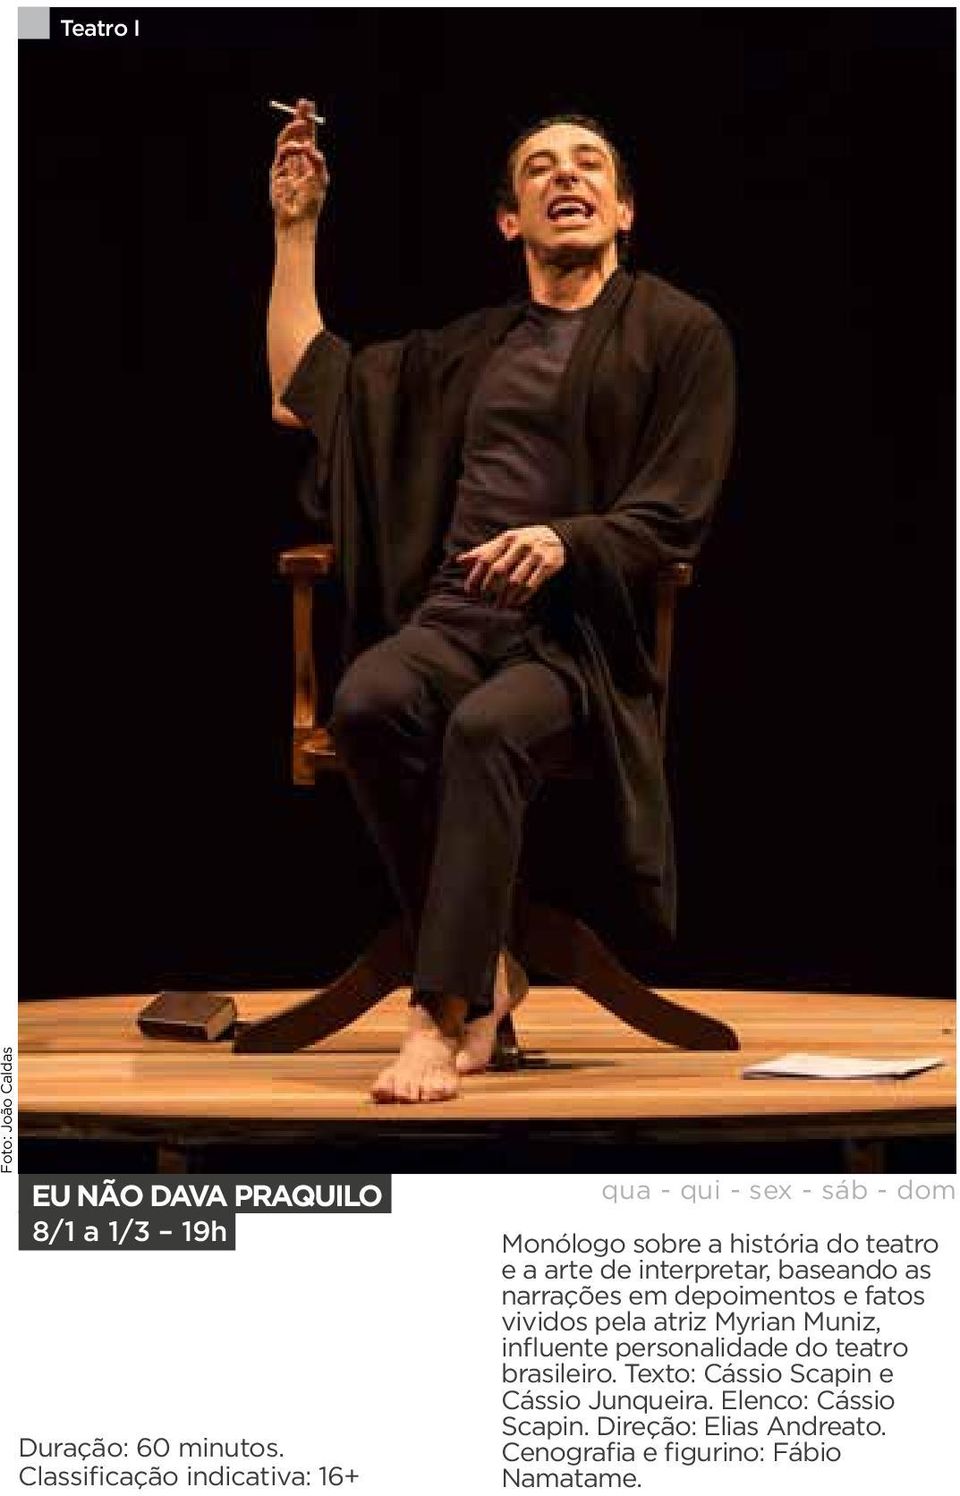 interpretar, baseando as narrações em depoimentos e fatos vividos pela atriz Myrian Muniz, influente